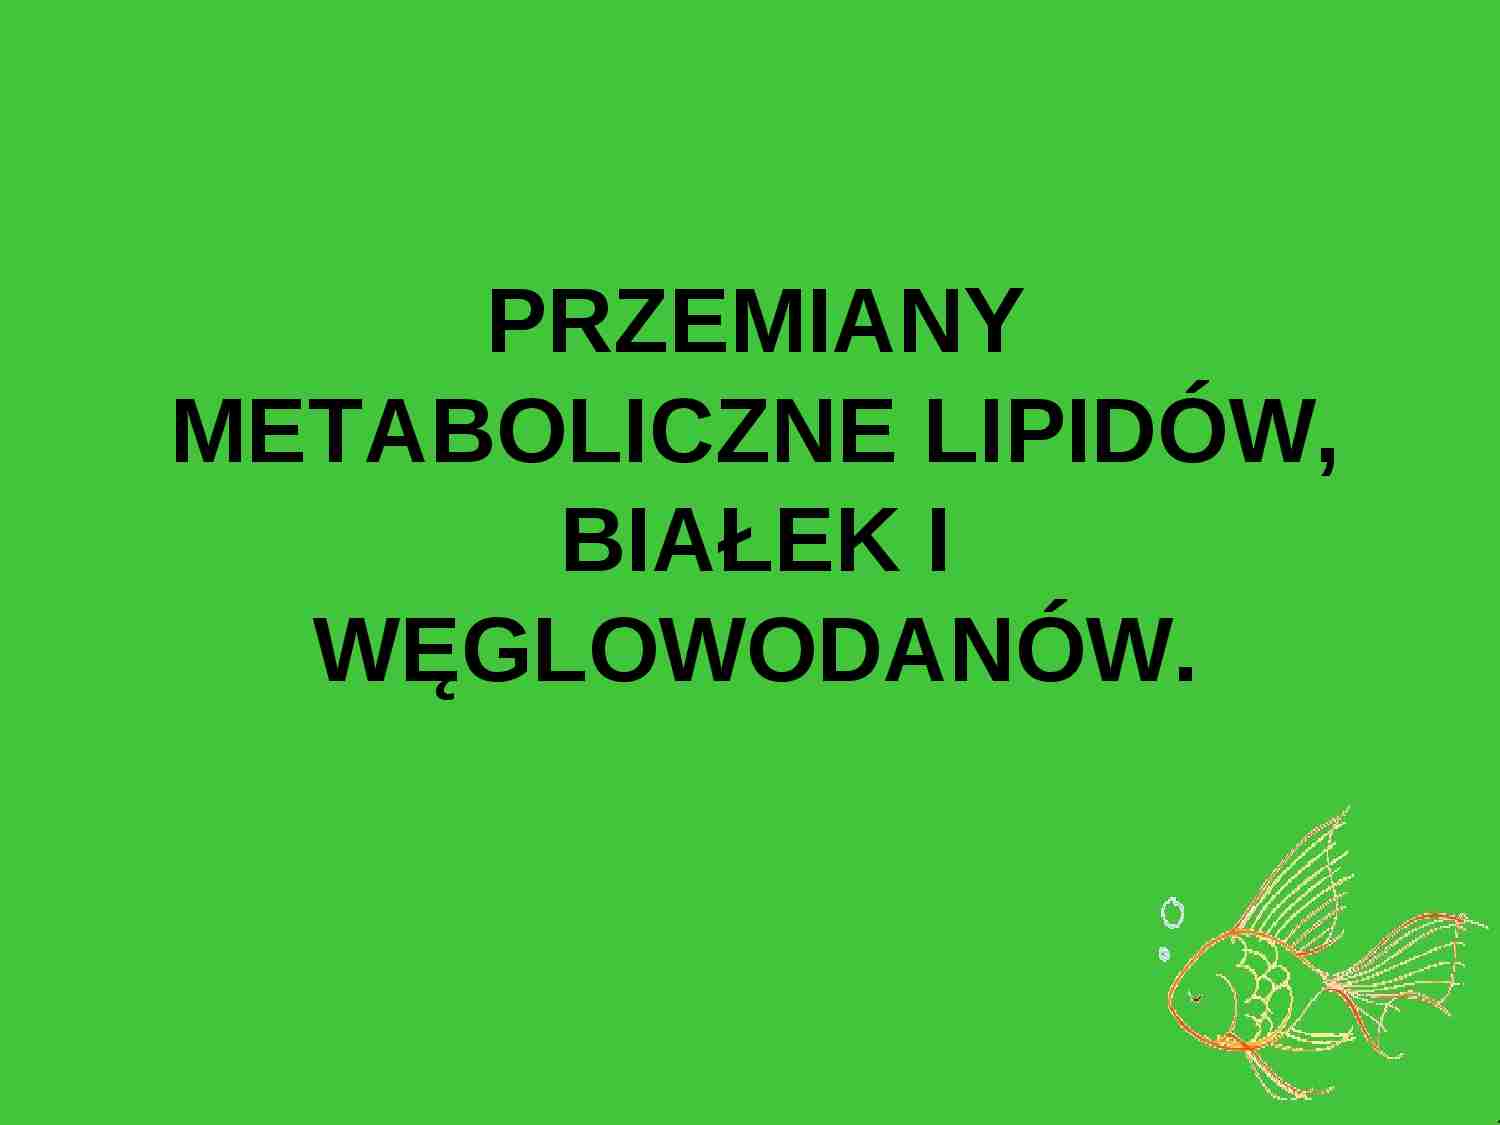 Przemiany metaboliczne lipidów, białek i węglowodanów - prezentacja - strona 1